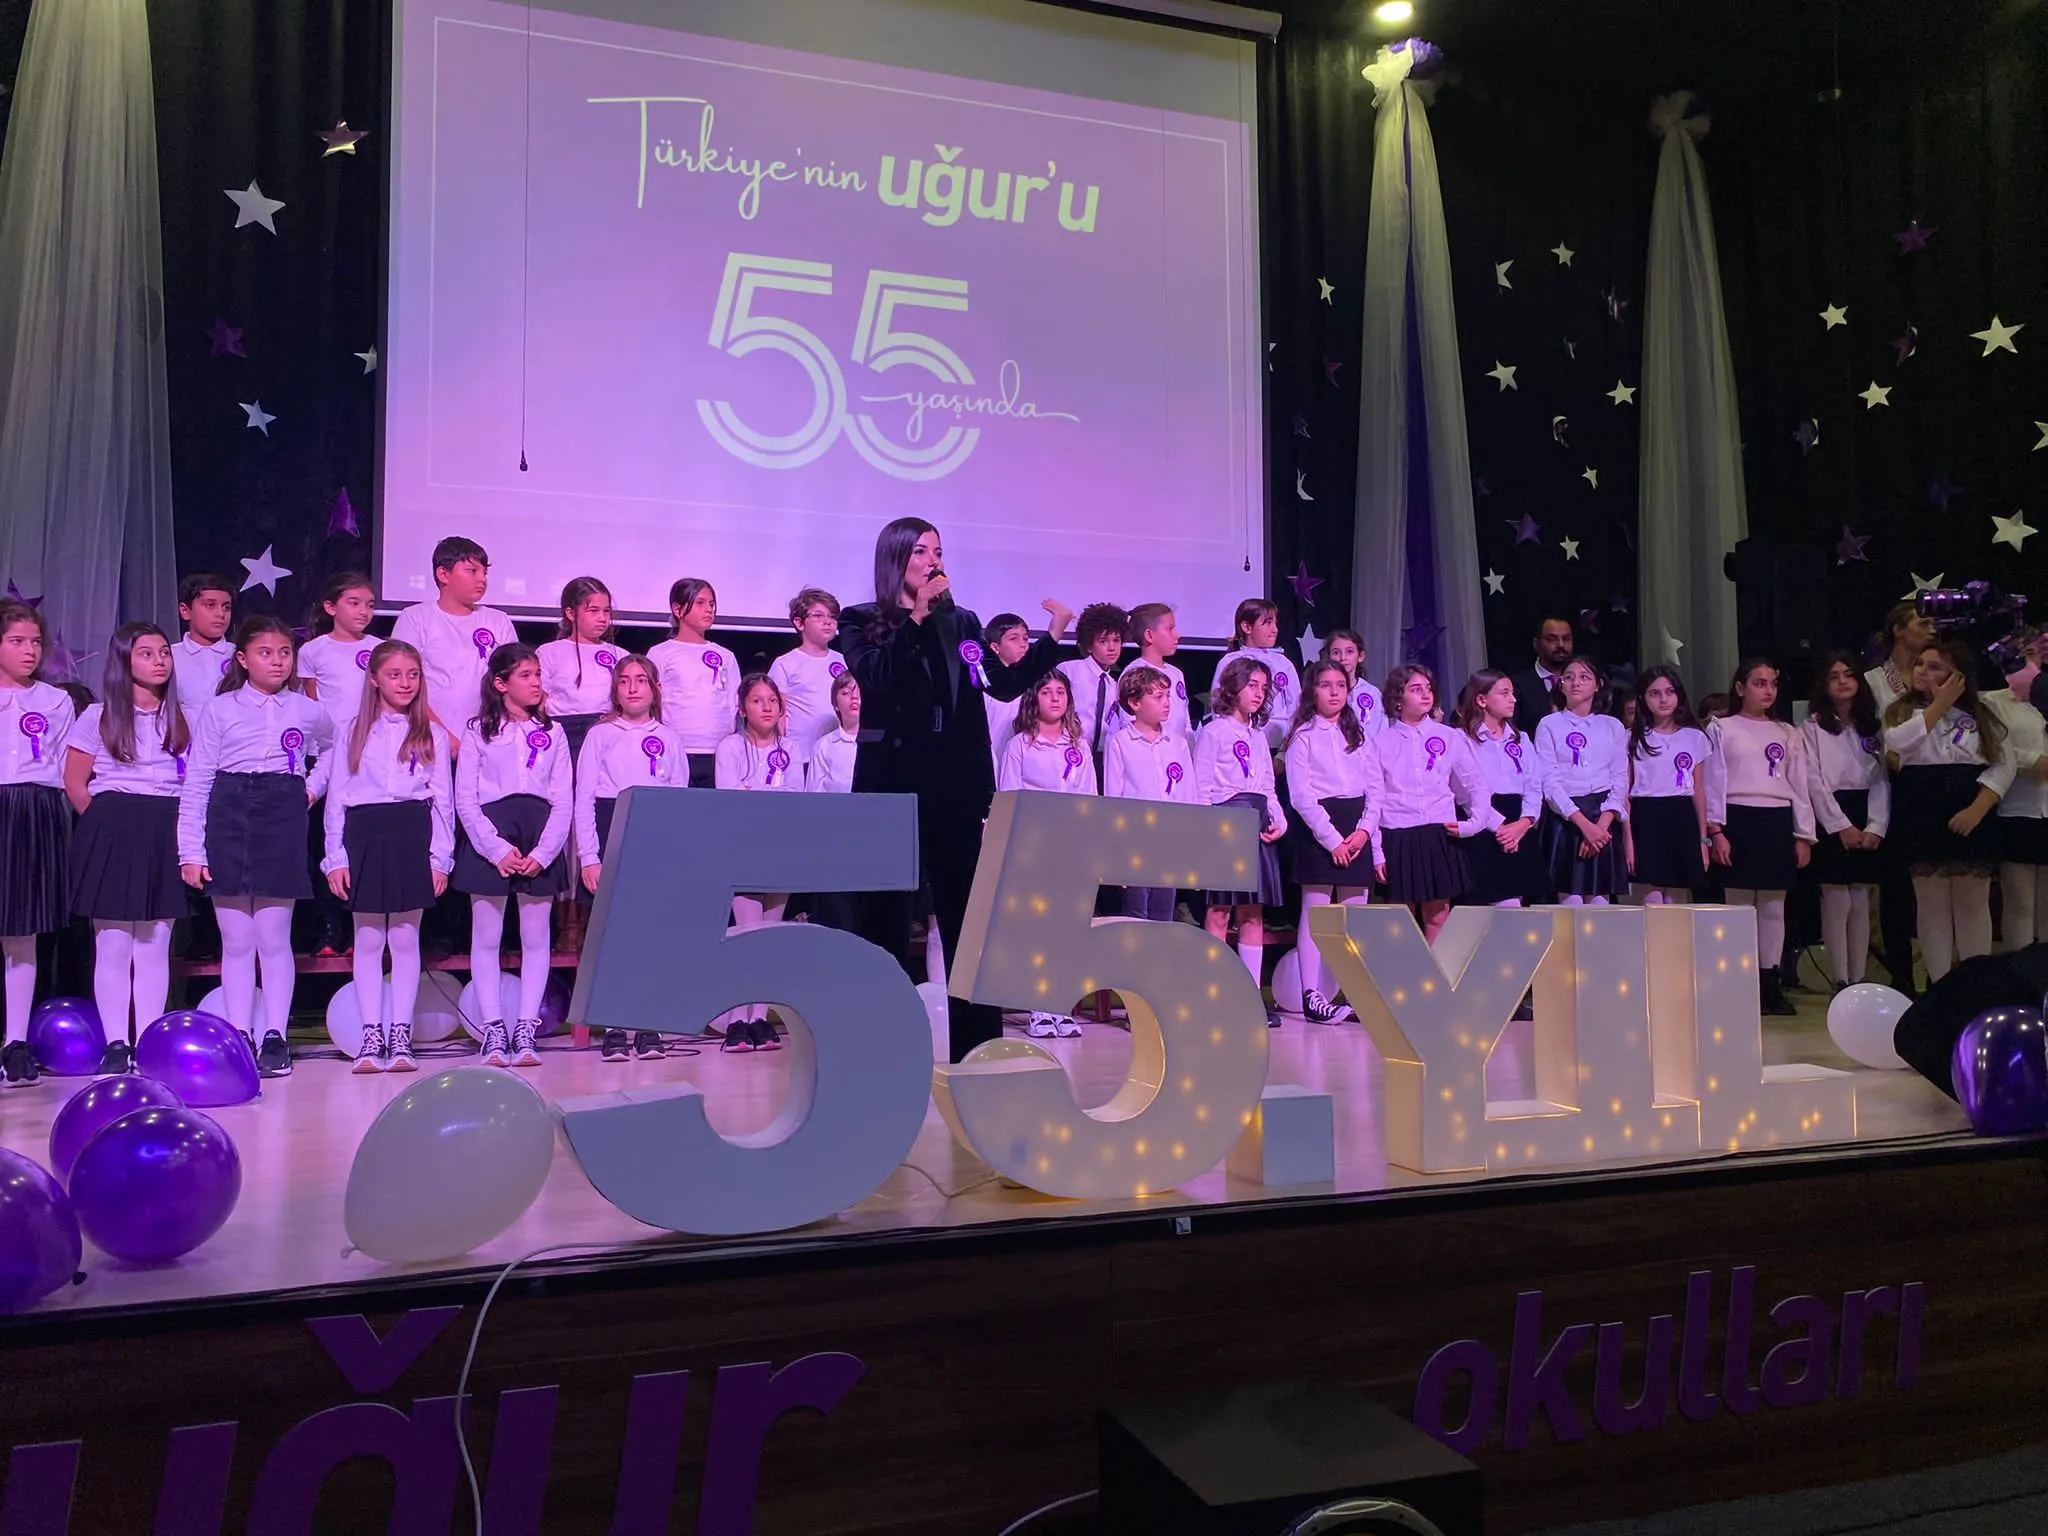 ugur okullari 55inci yilini kutladi 0 jCYMSnD3